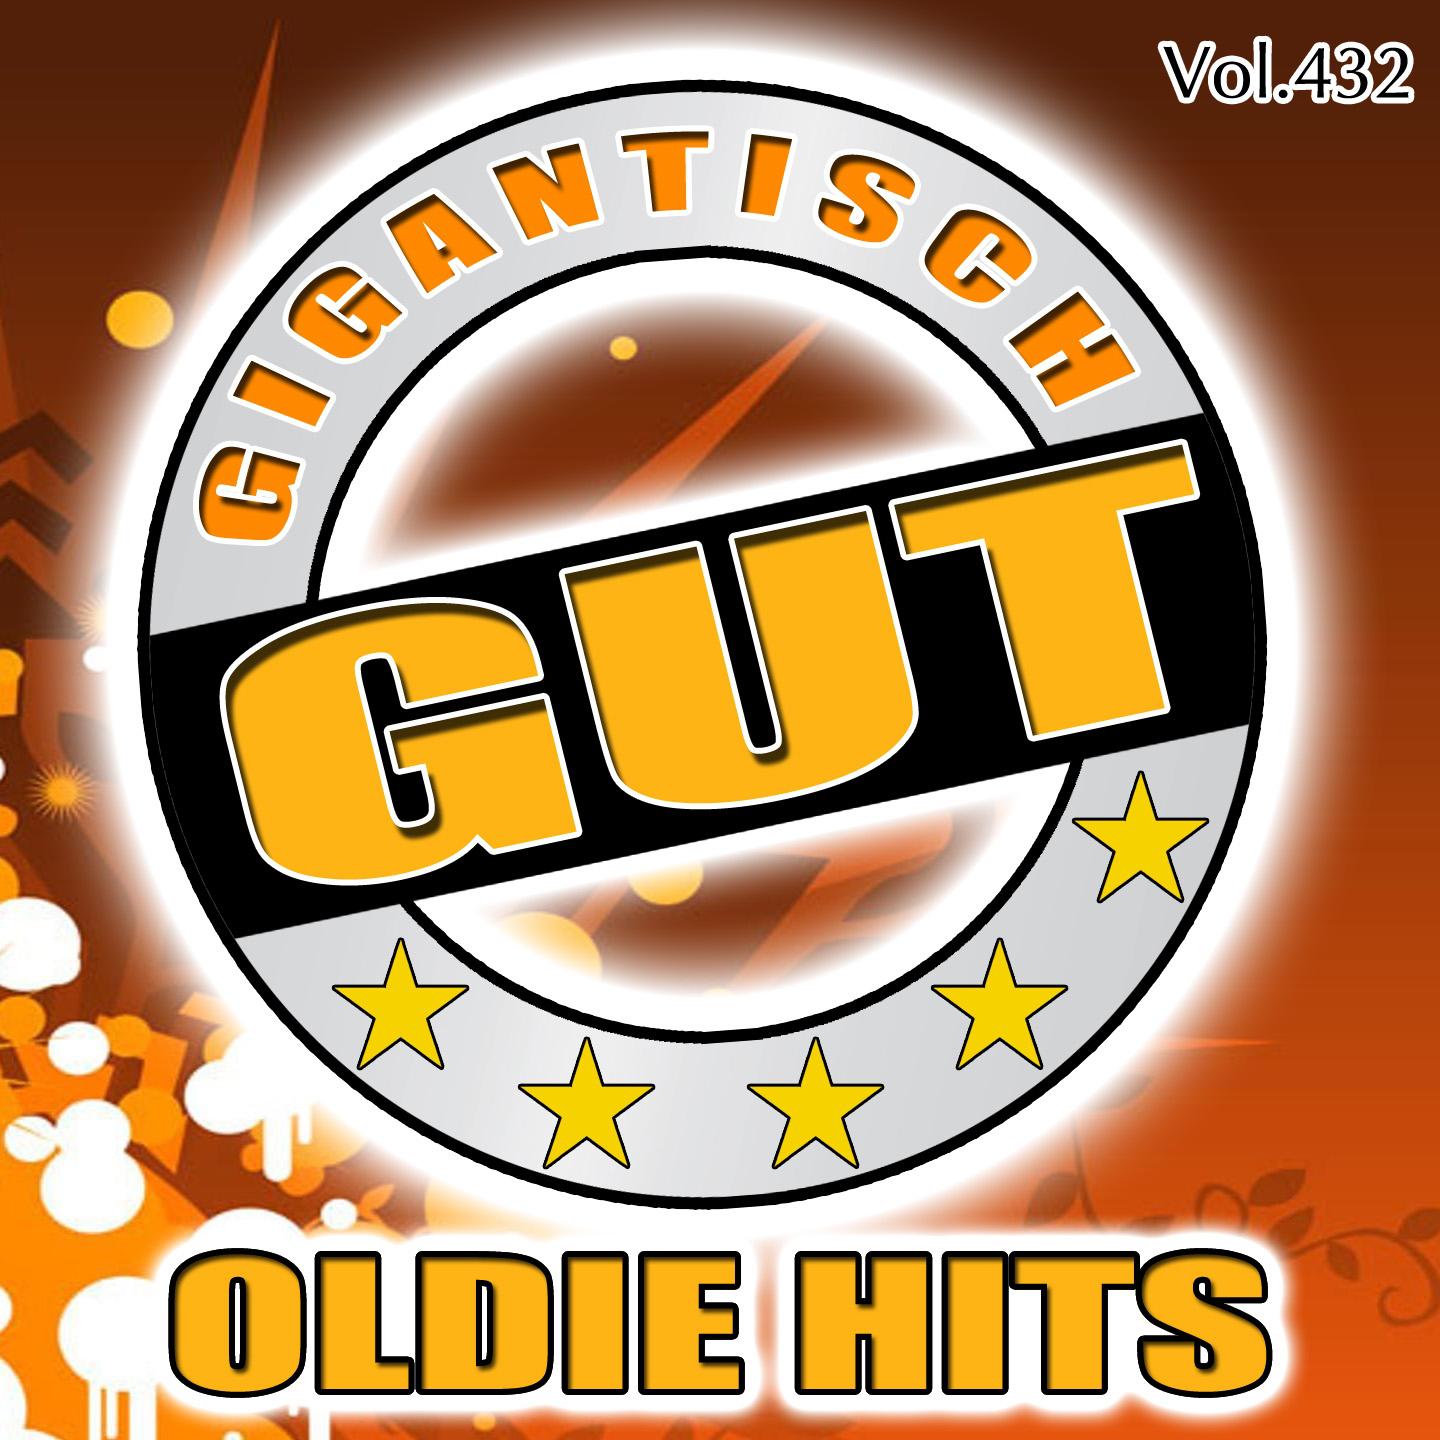 Gigantisch Gut: Oldie Hits, Vol. 432